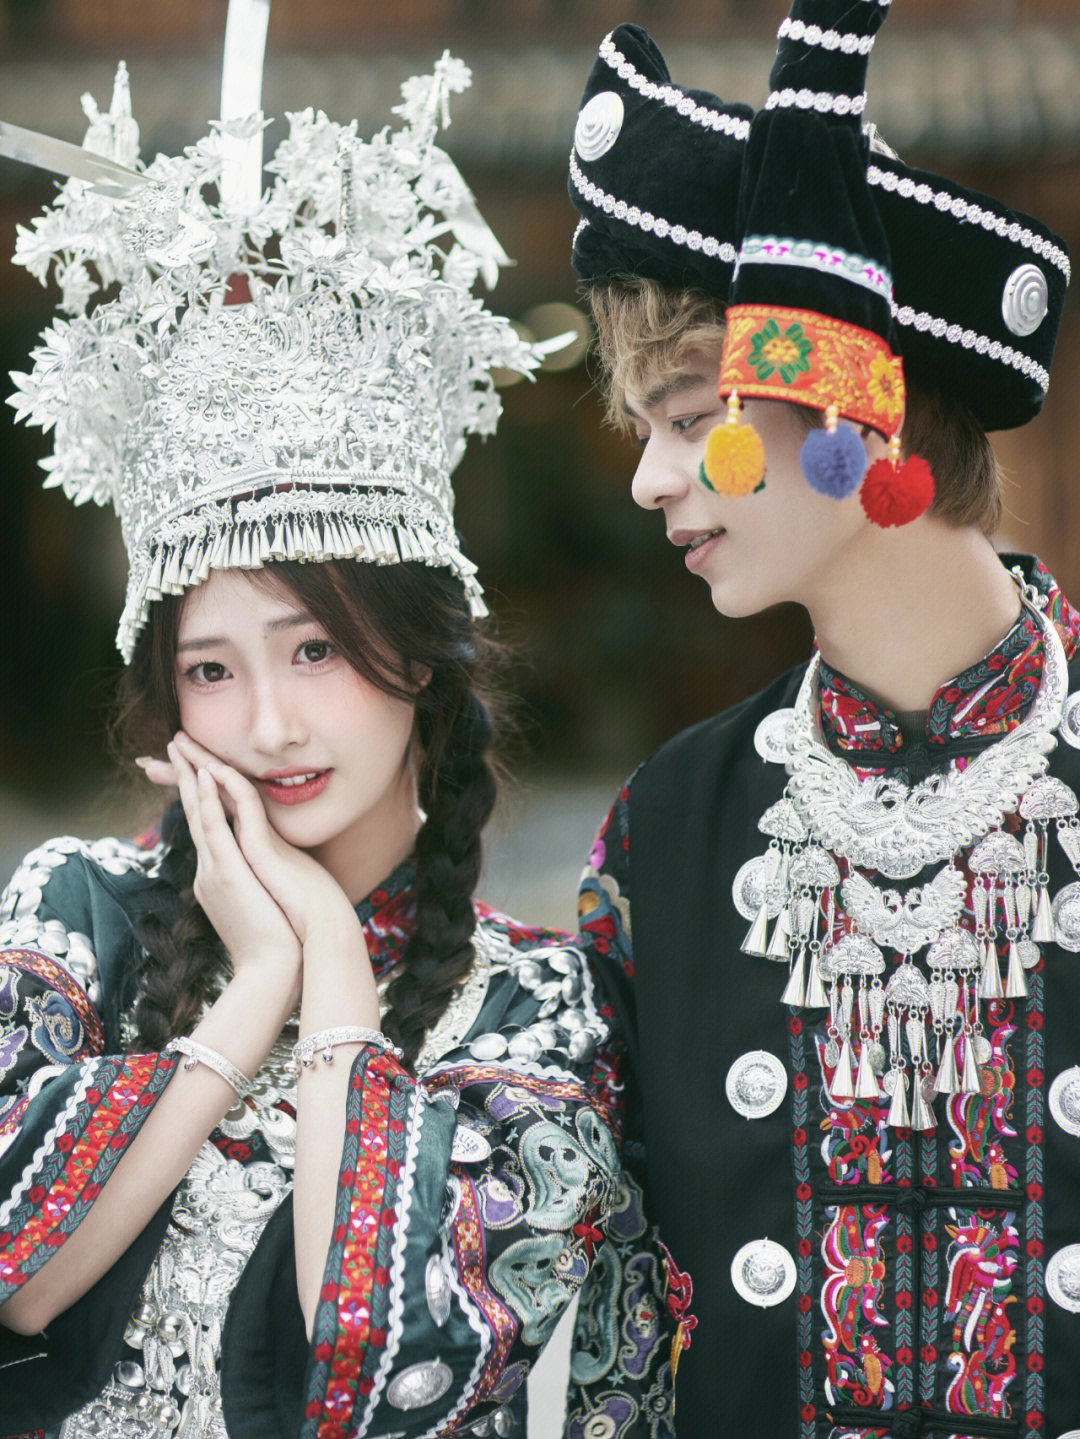 [彩虹r]拍摄地点是丽江[火r][火r][火r]给杨东煜&啊星夫妇拍的婚纱照